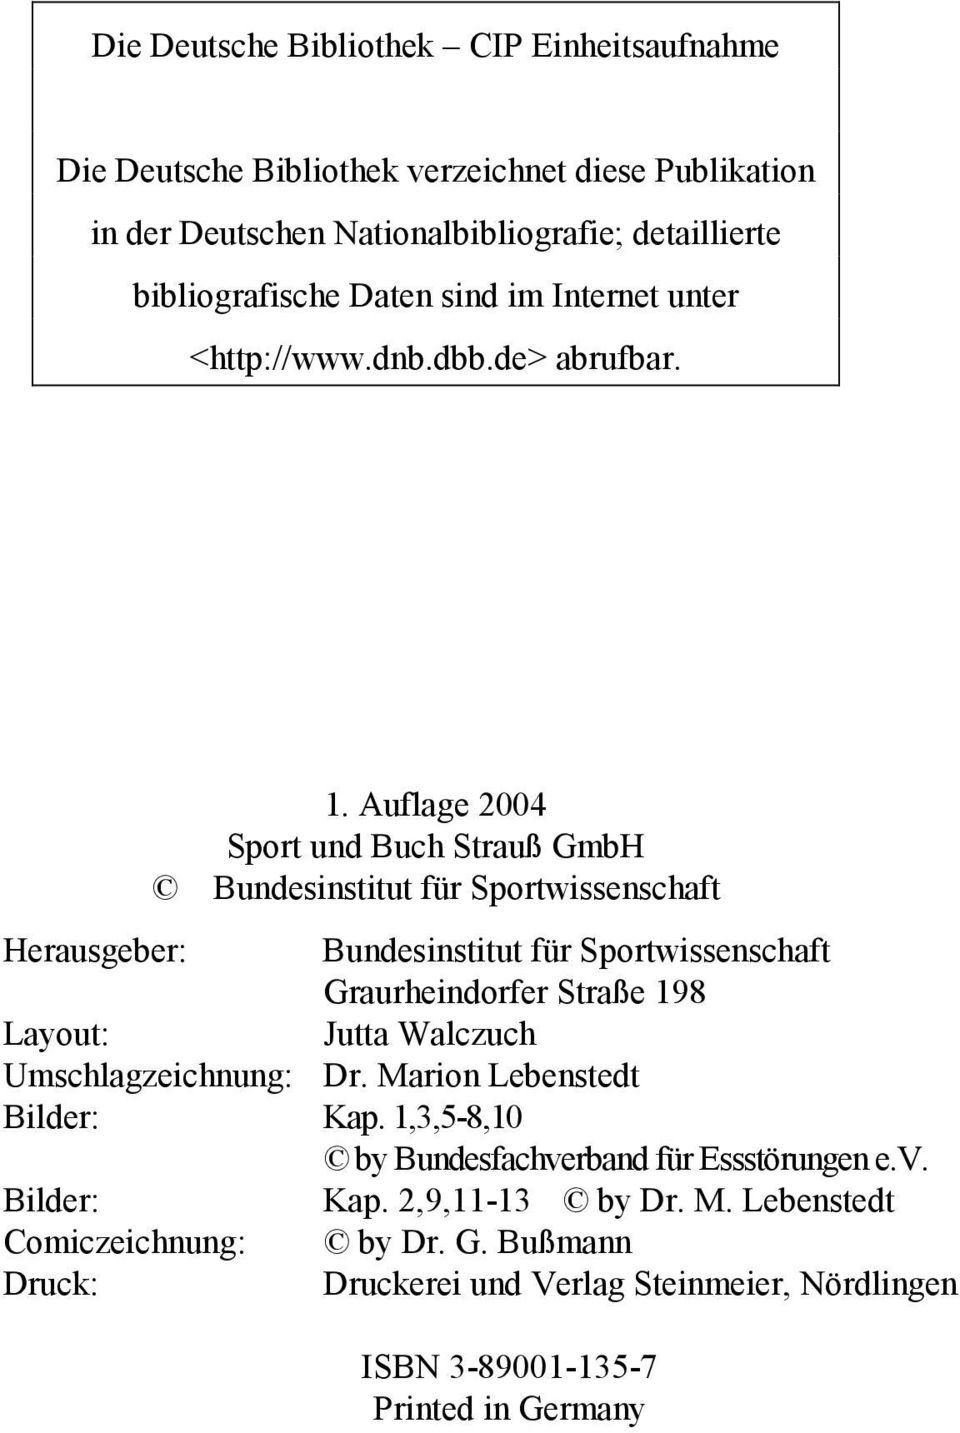 Auflage 2004 Sport und Buch Strauß GmbH Bundesinstitut für Sportwissenschaft Herausgeber: Bundesinstitut für Sportwissenschaft Graurheindorfer Straße 198 Layout: Jutta